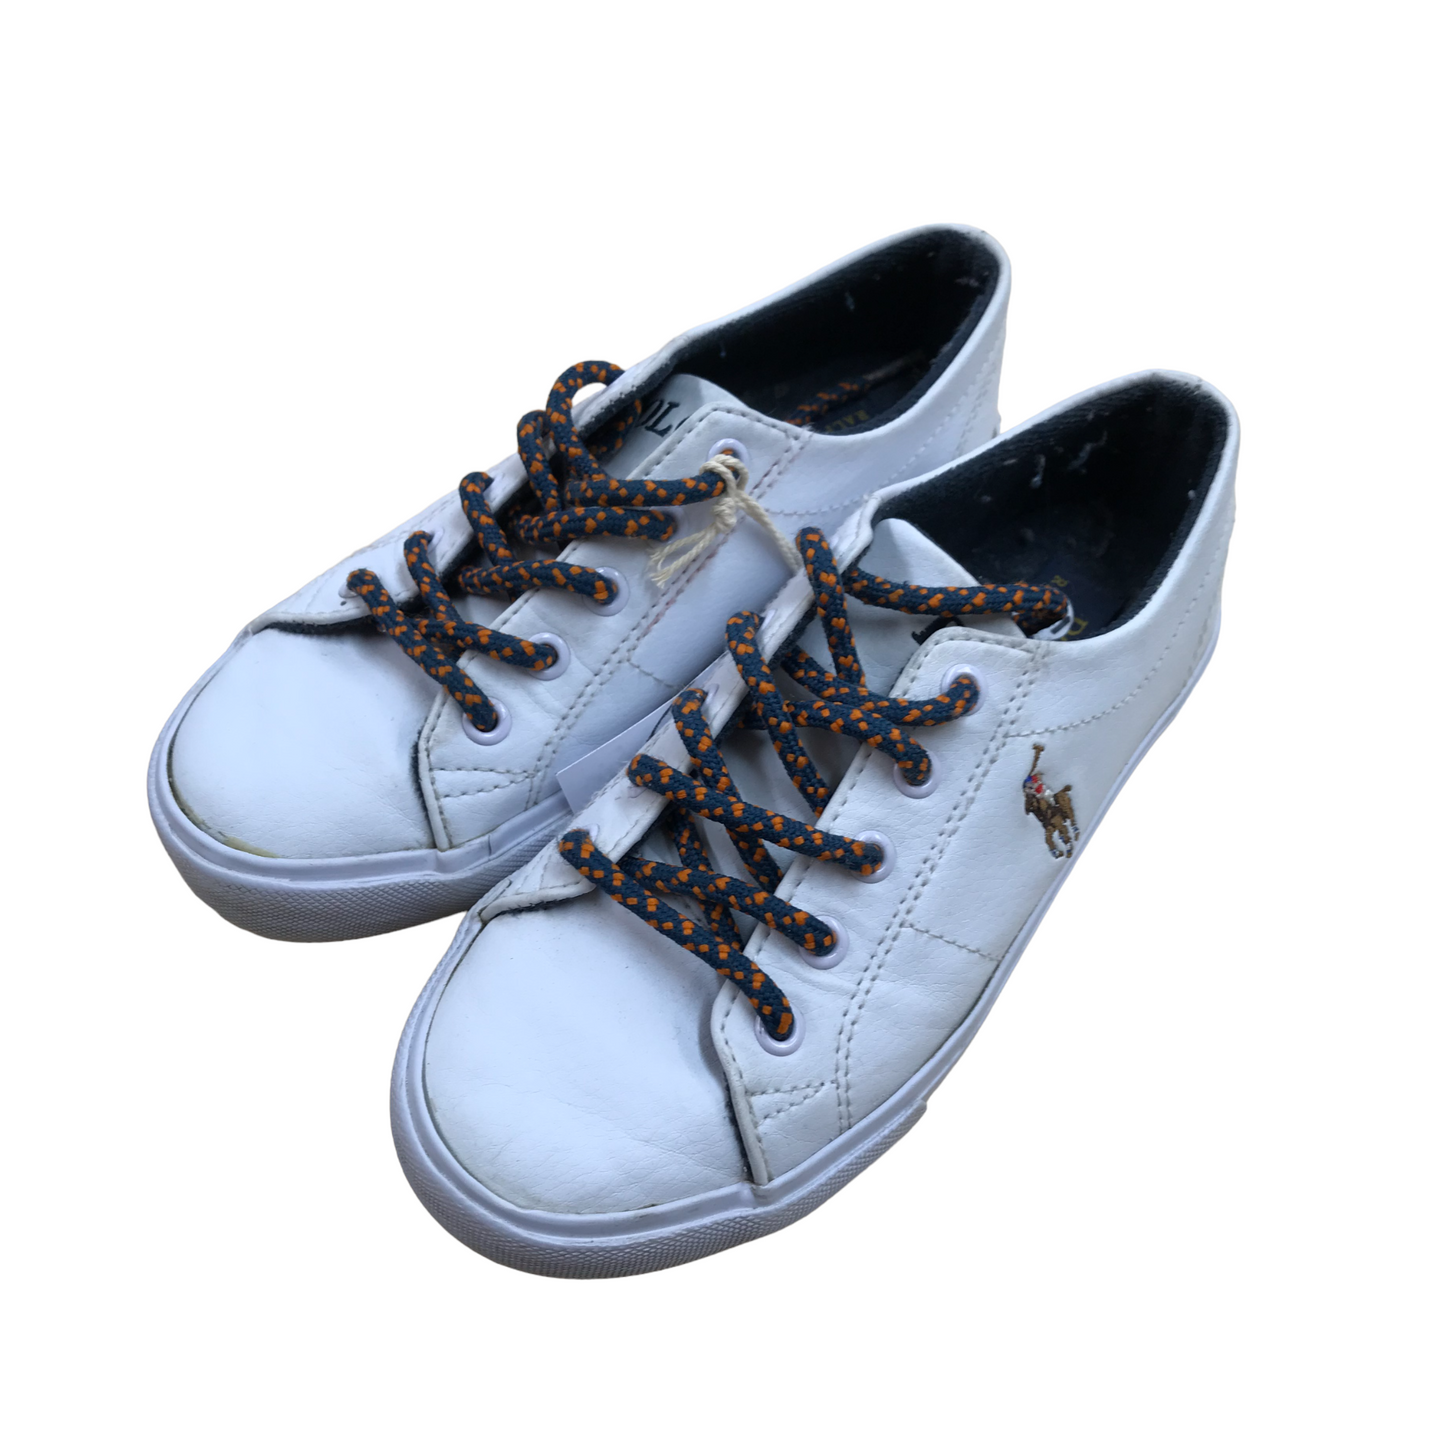 Ralph Lauren White Trainers Shoe Size 12.5 (jr)